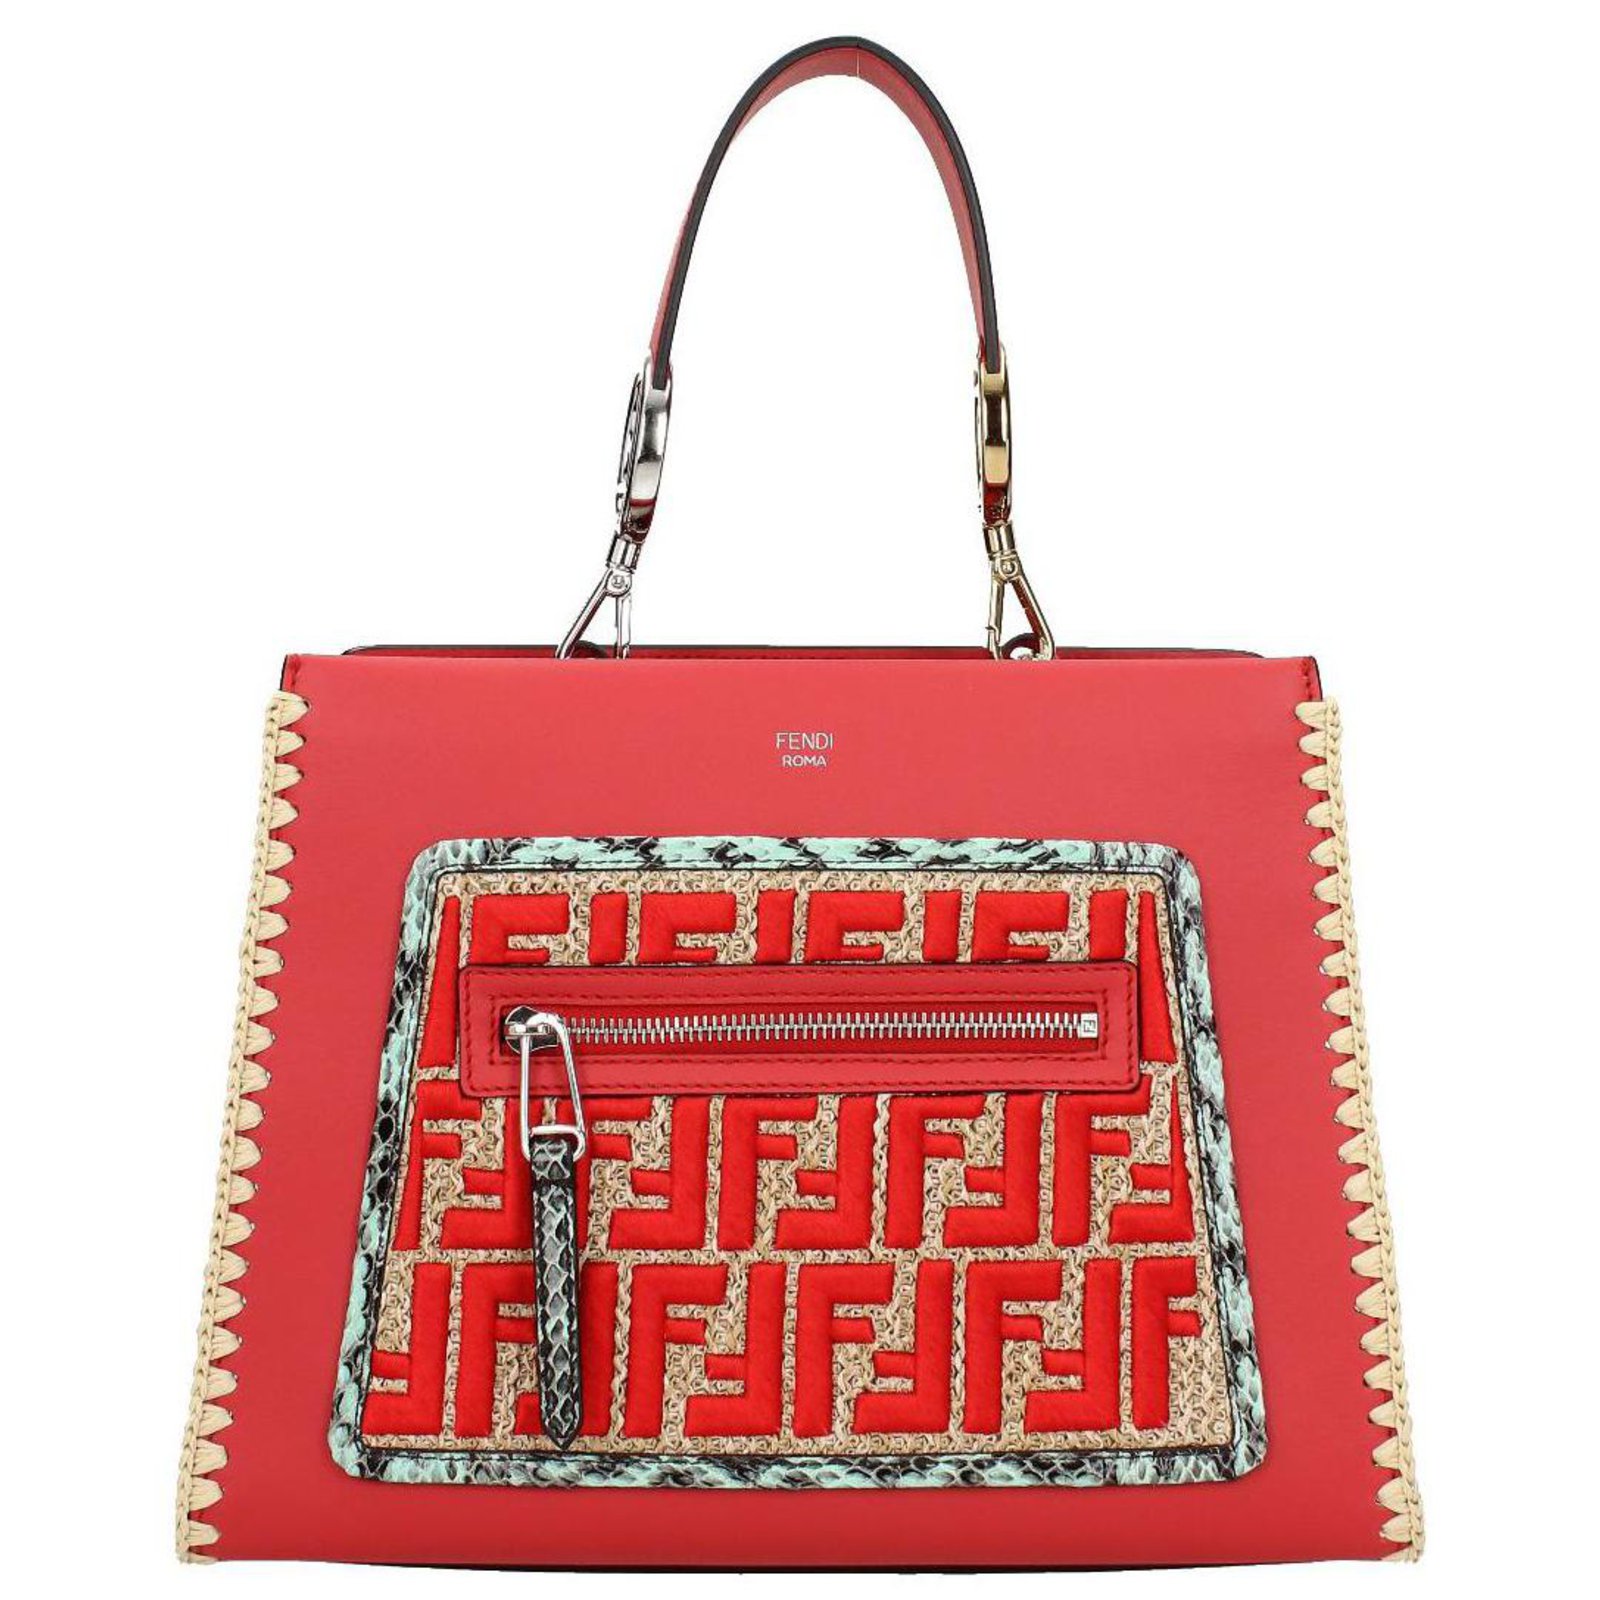 red fendi handbag